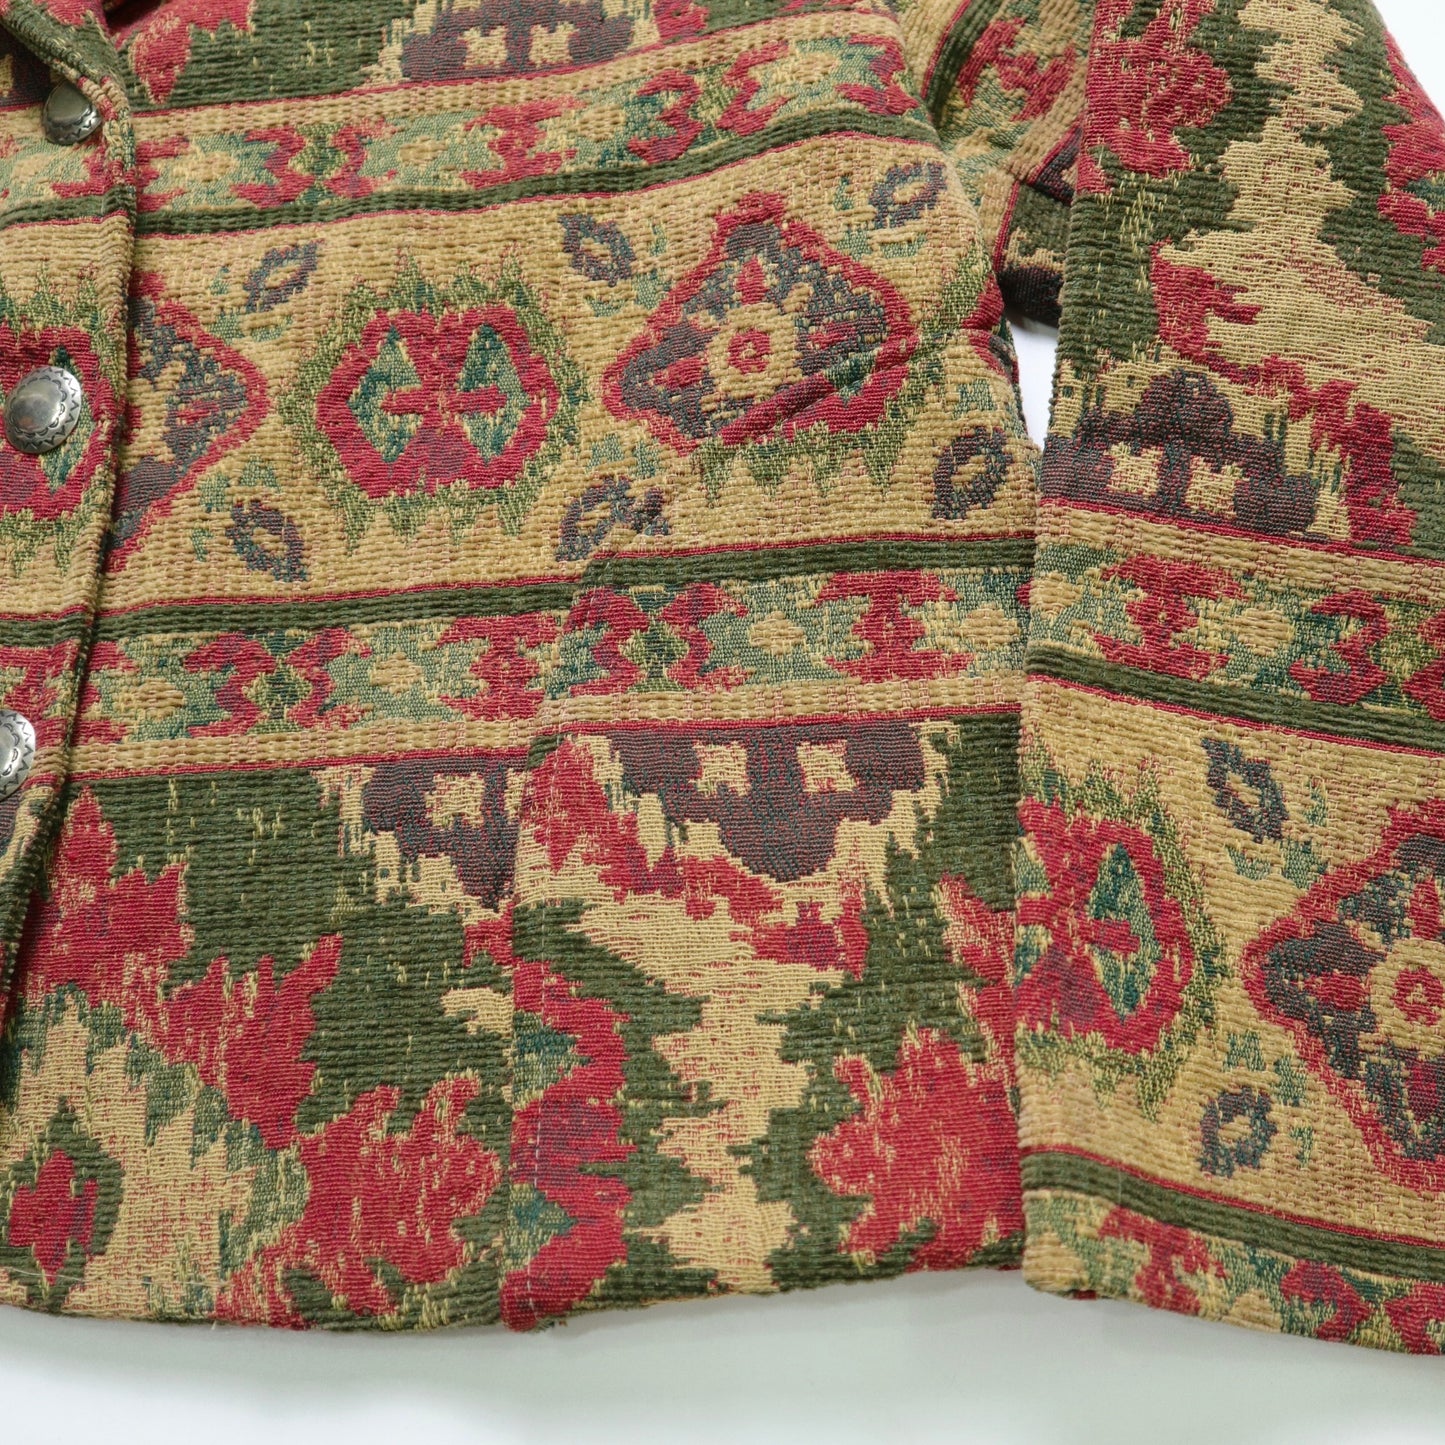 90s 美國製 古典圖騰花毯外套